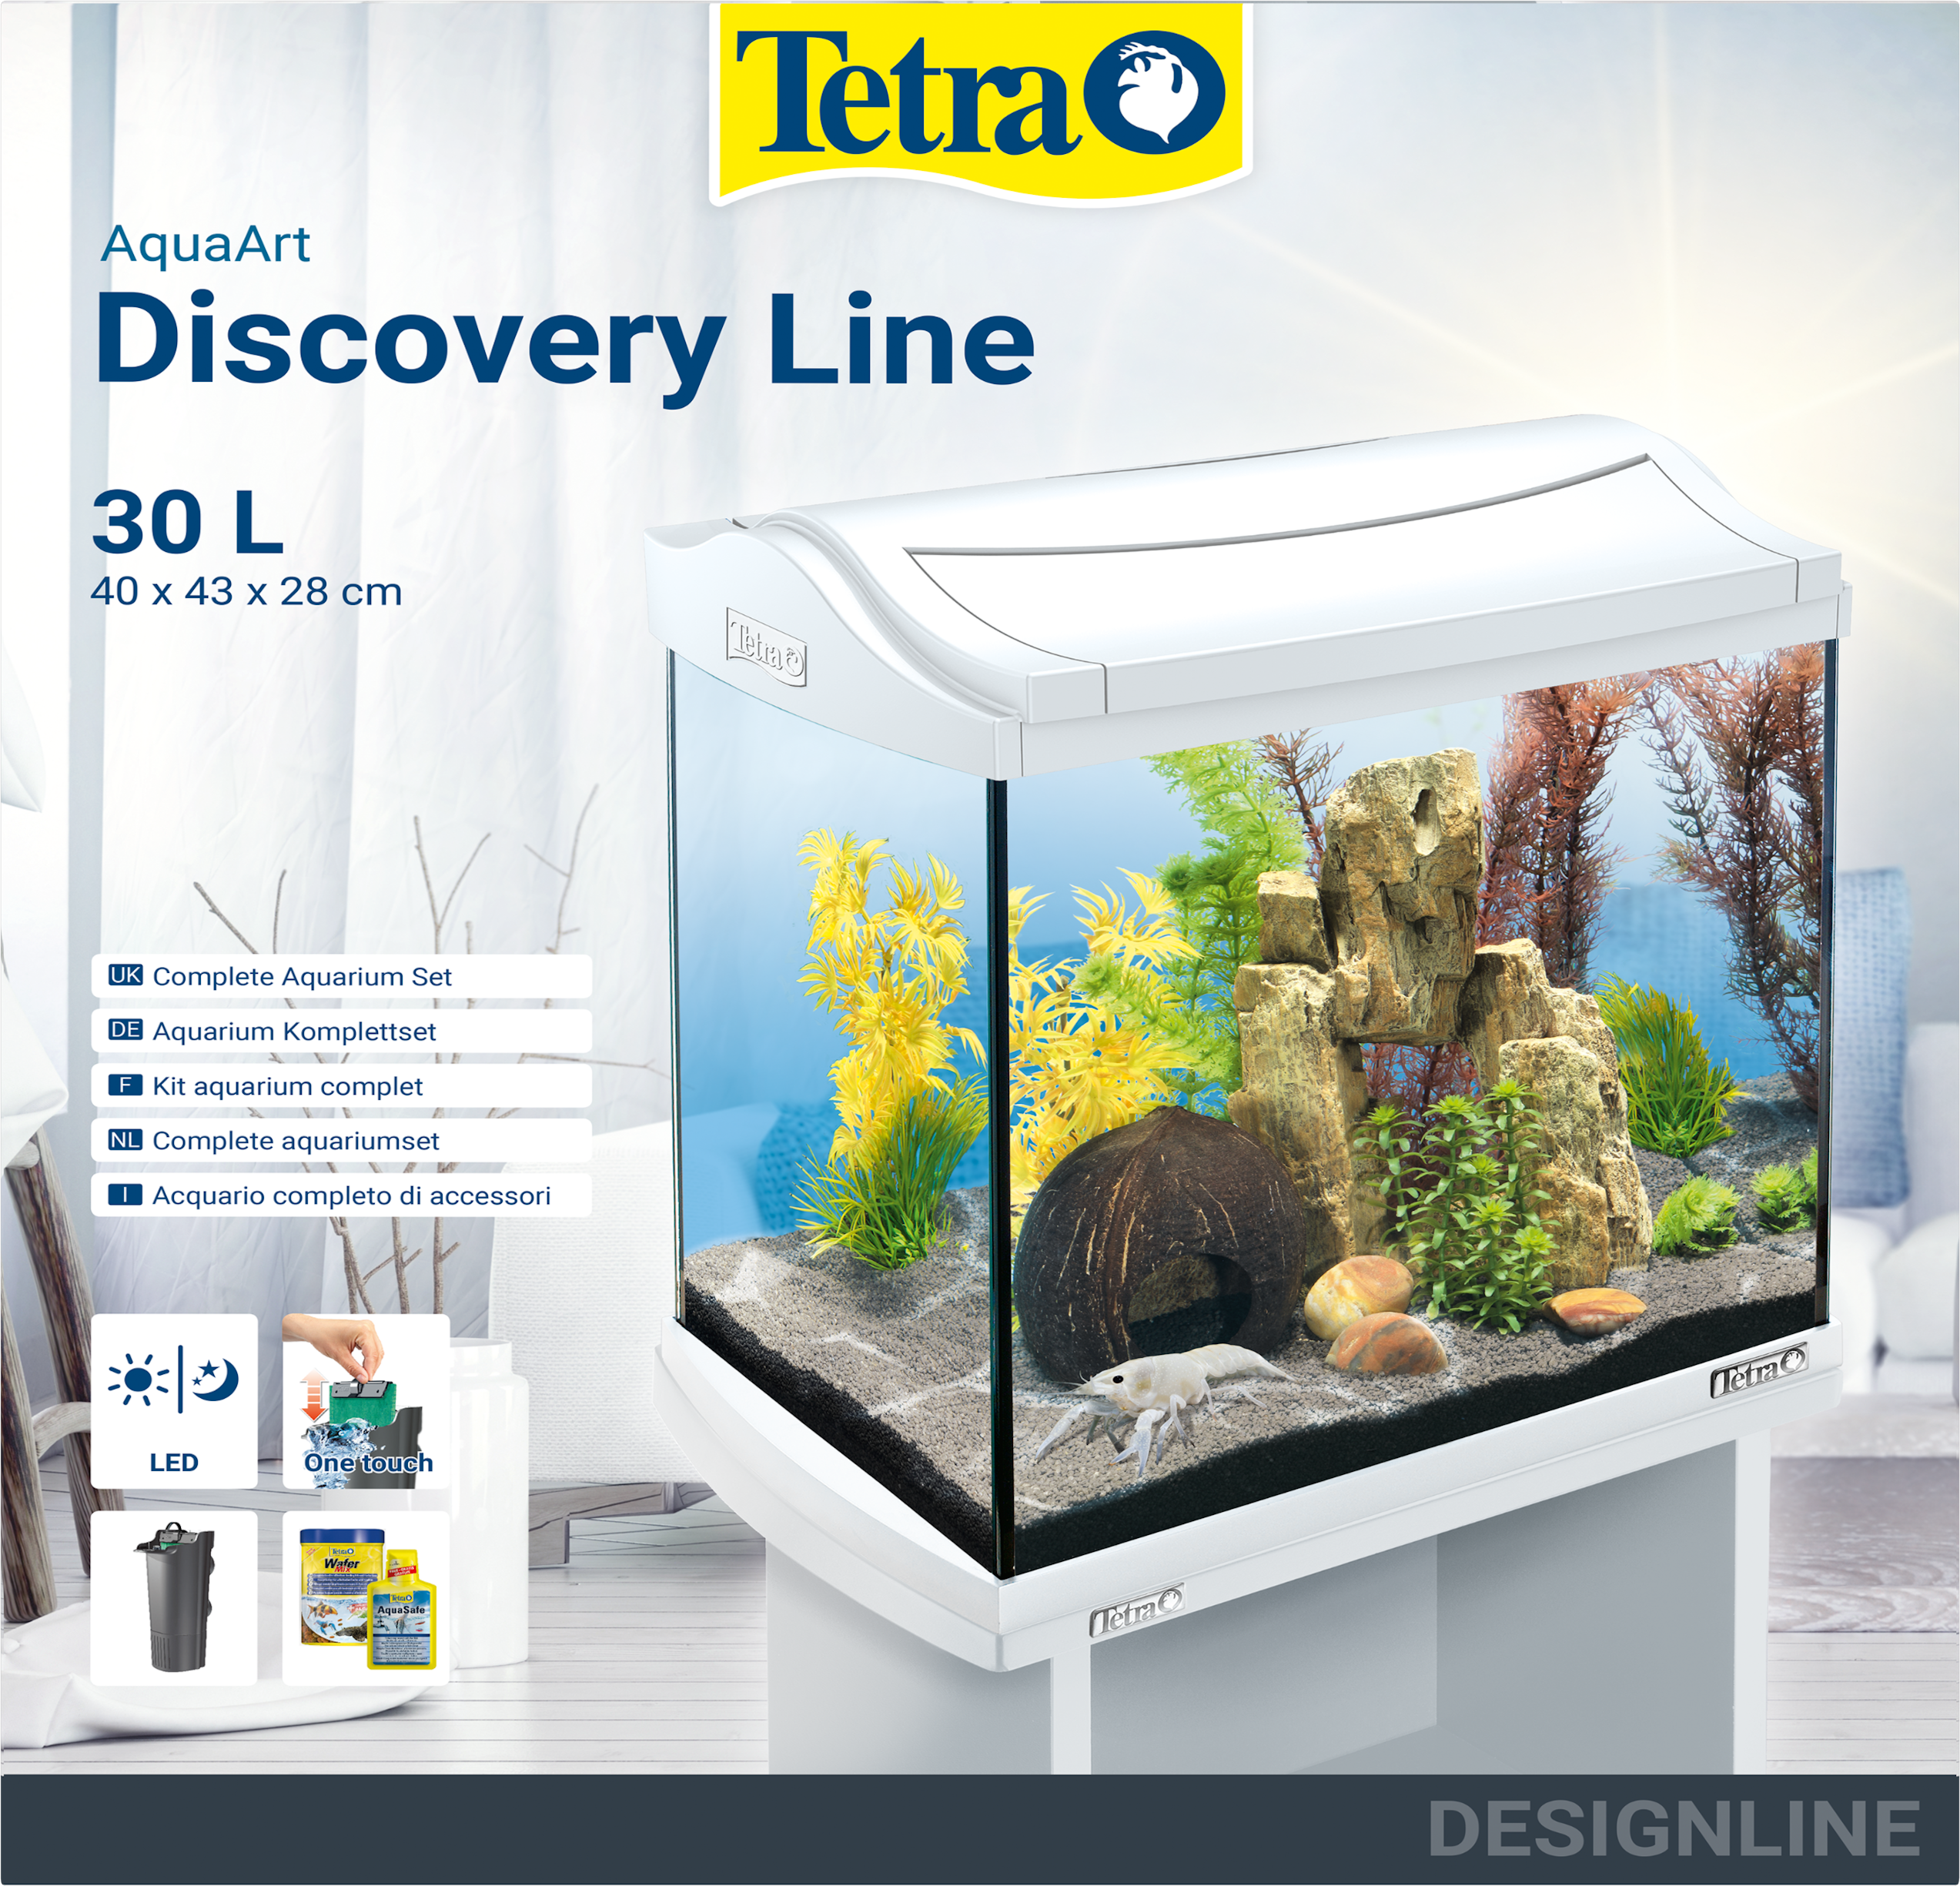 Tetra AquaArt LED-aquarium Crayfish Tetra